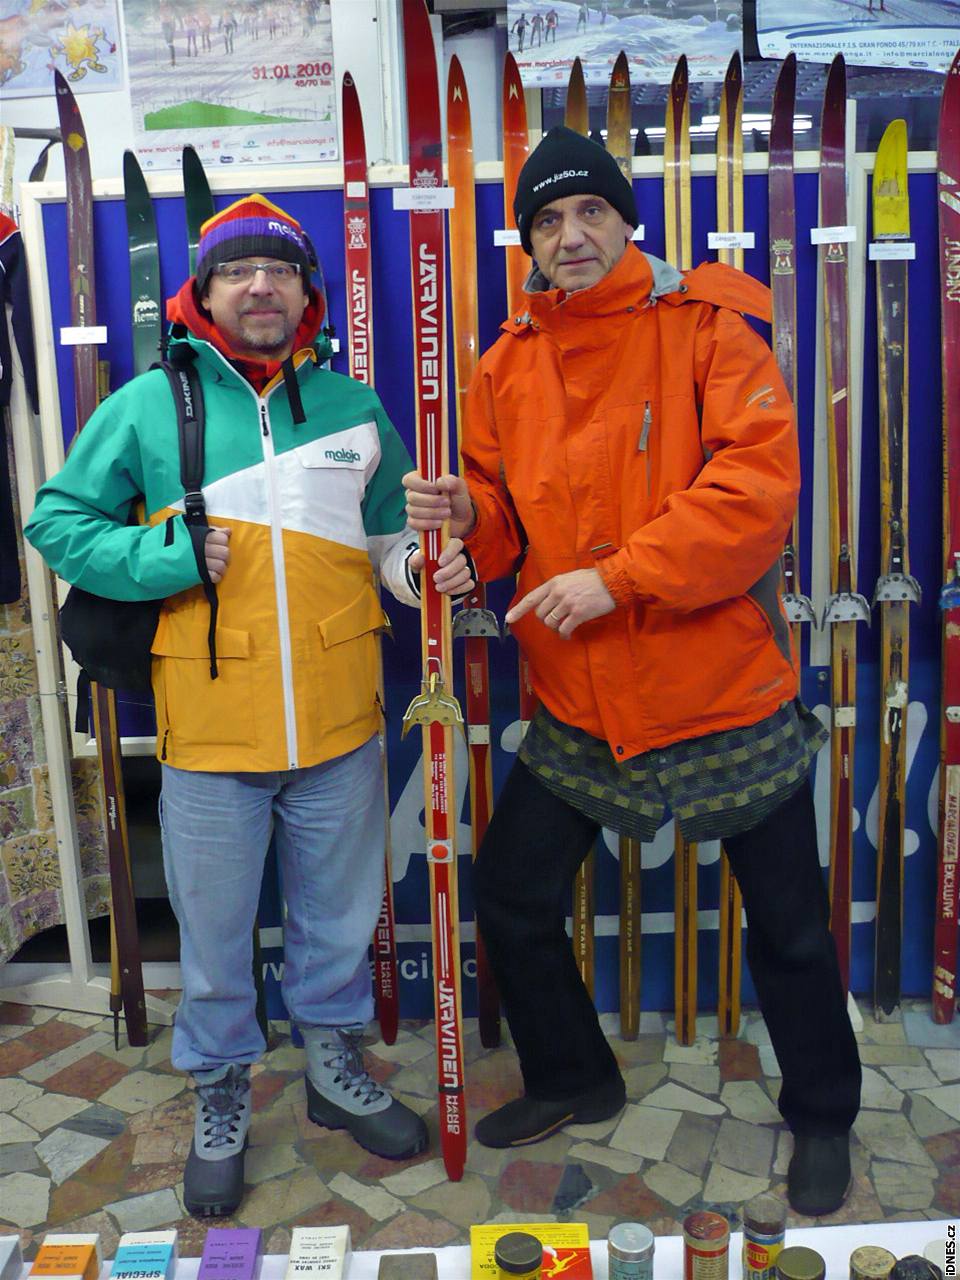 Historická výstava lyí a beckého vybavení ze vech roník Marcialongy v Predazzu, kterou uspoádal majitel místního sportovního obchodu Franco Chemin